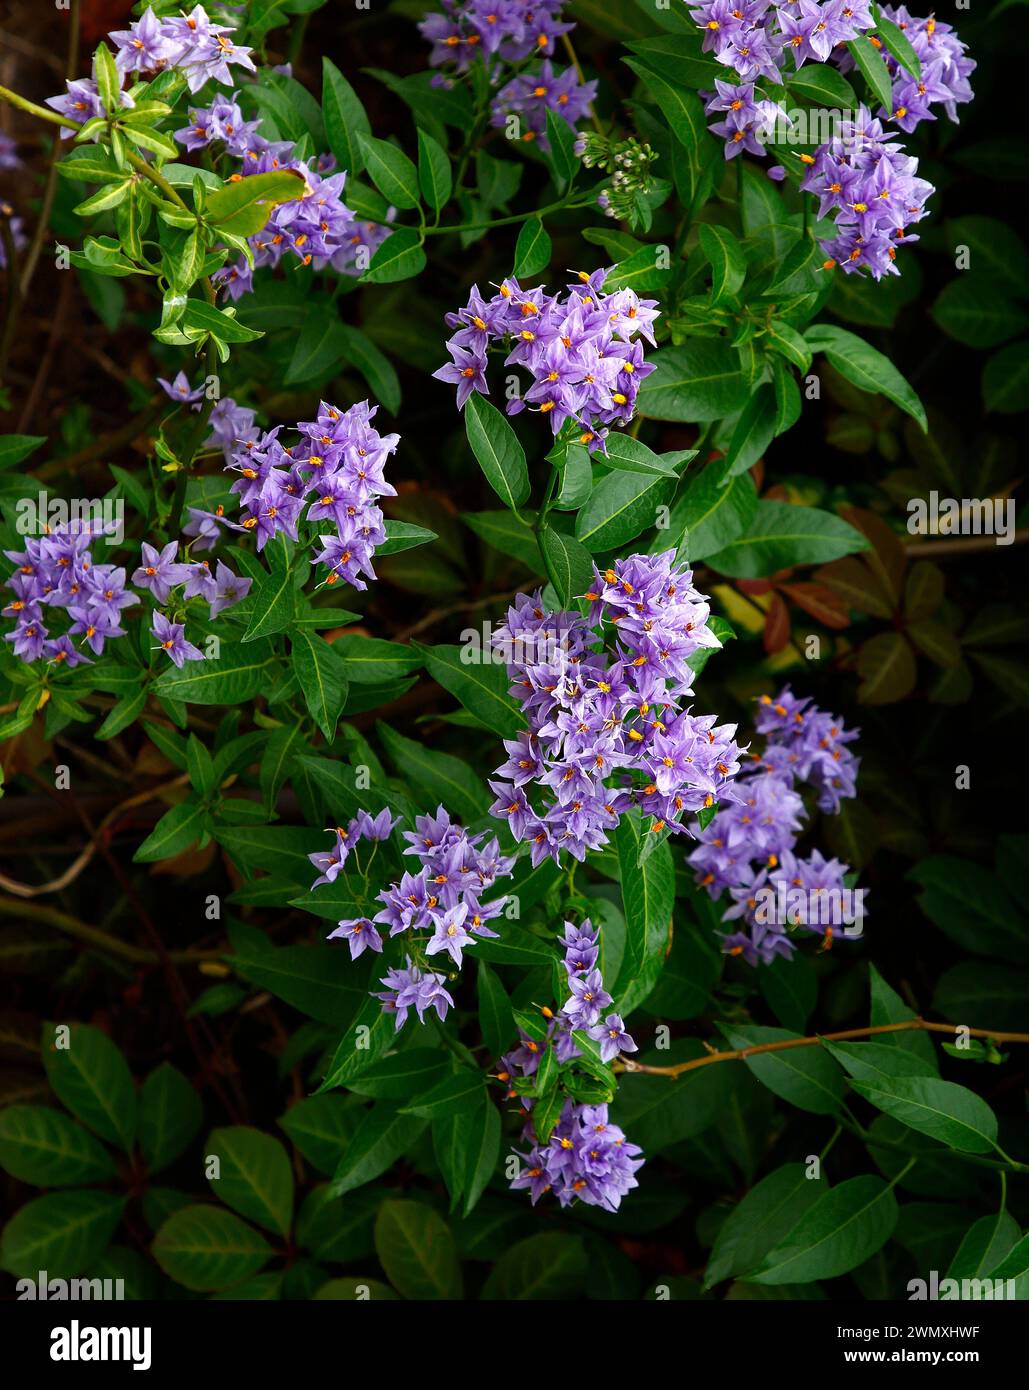 Nahaufnahme der violettblauen Blüten der mehrjährigen Gartenkletterpflanze solanum crispum Glasnevin. Stockfoto